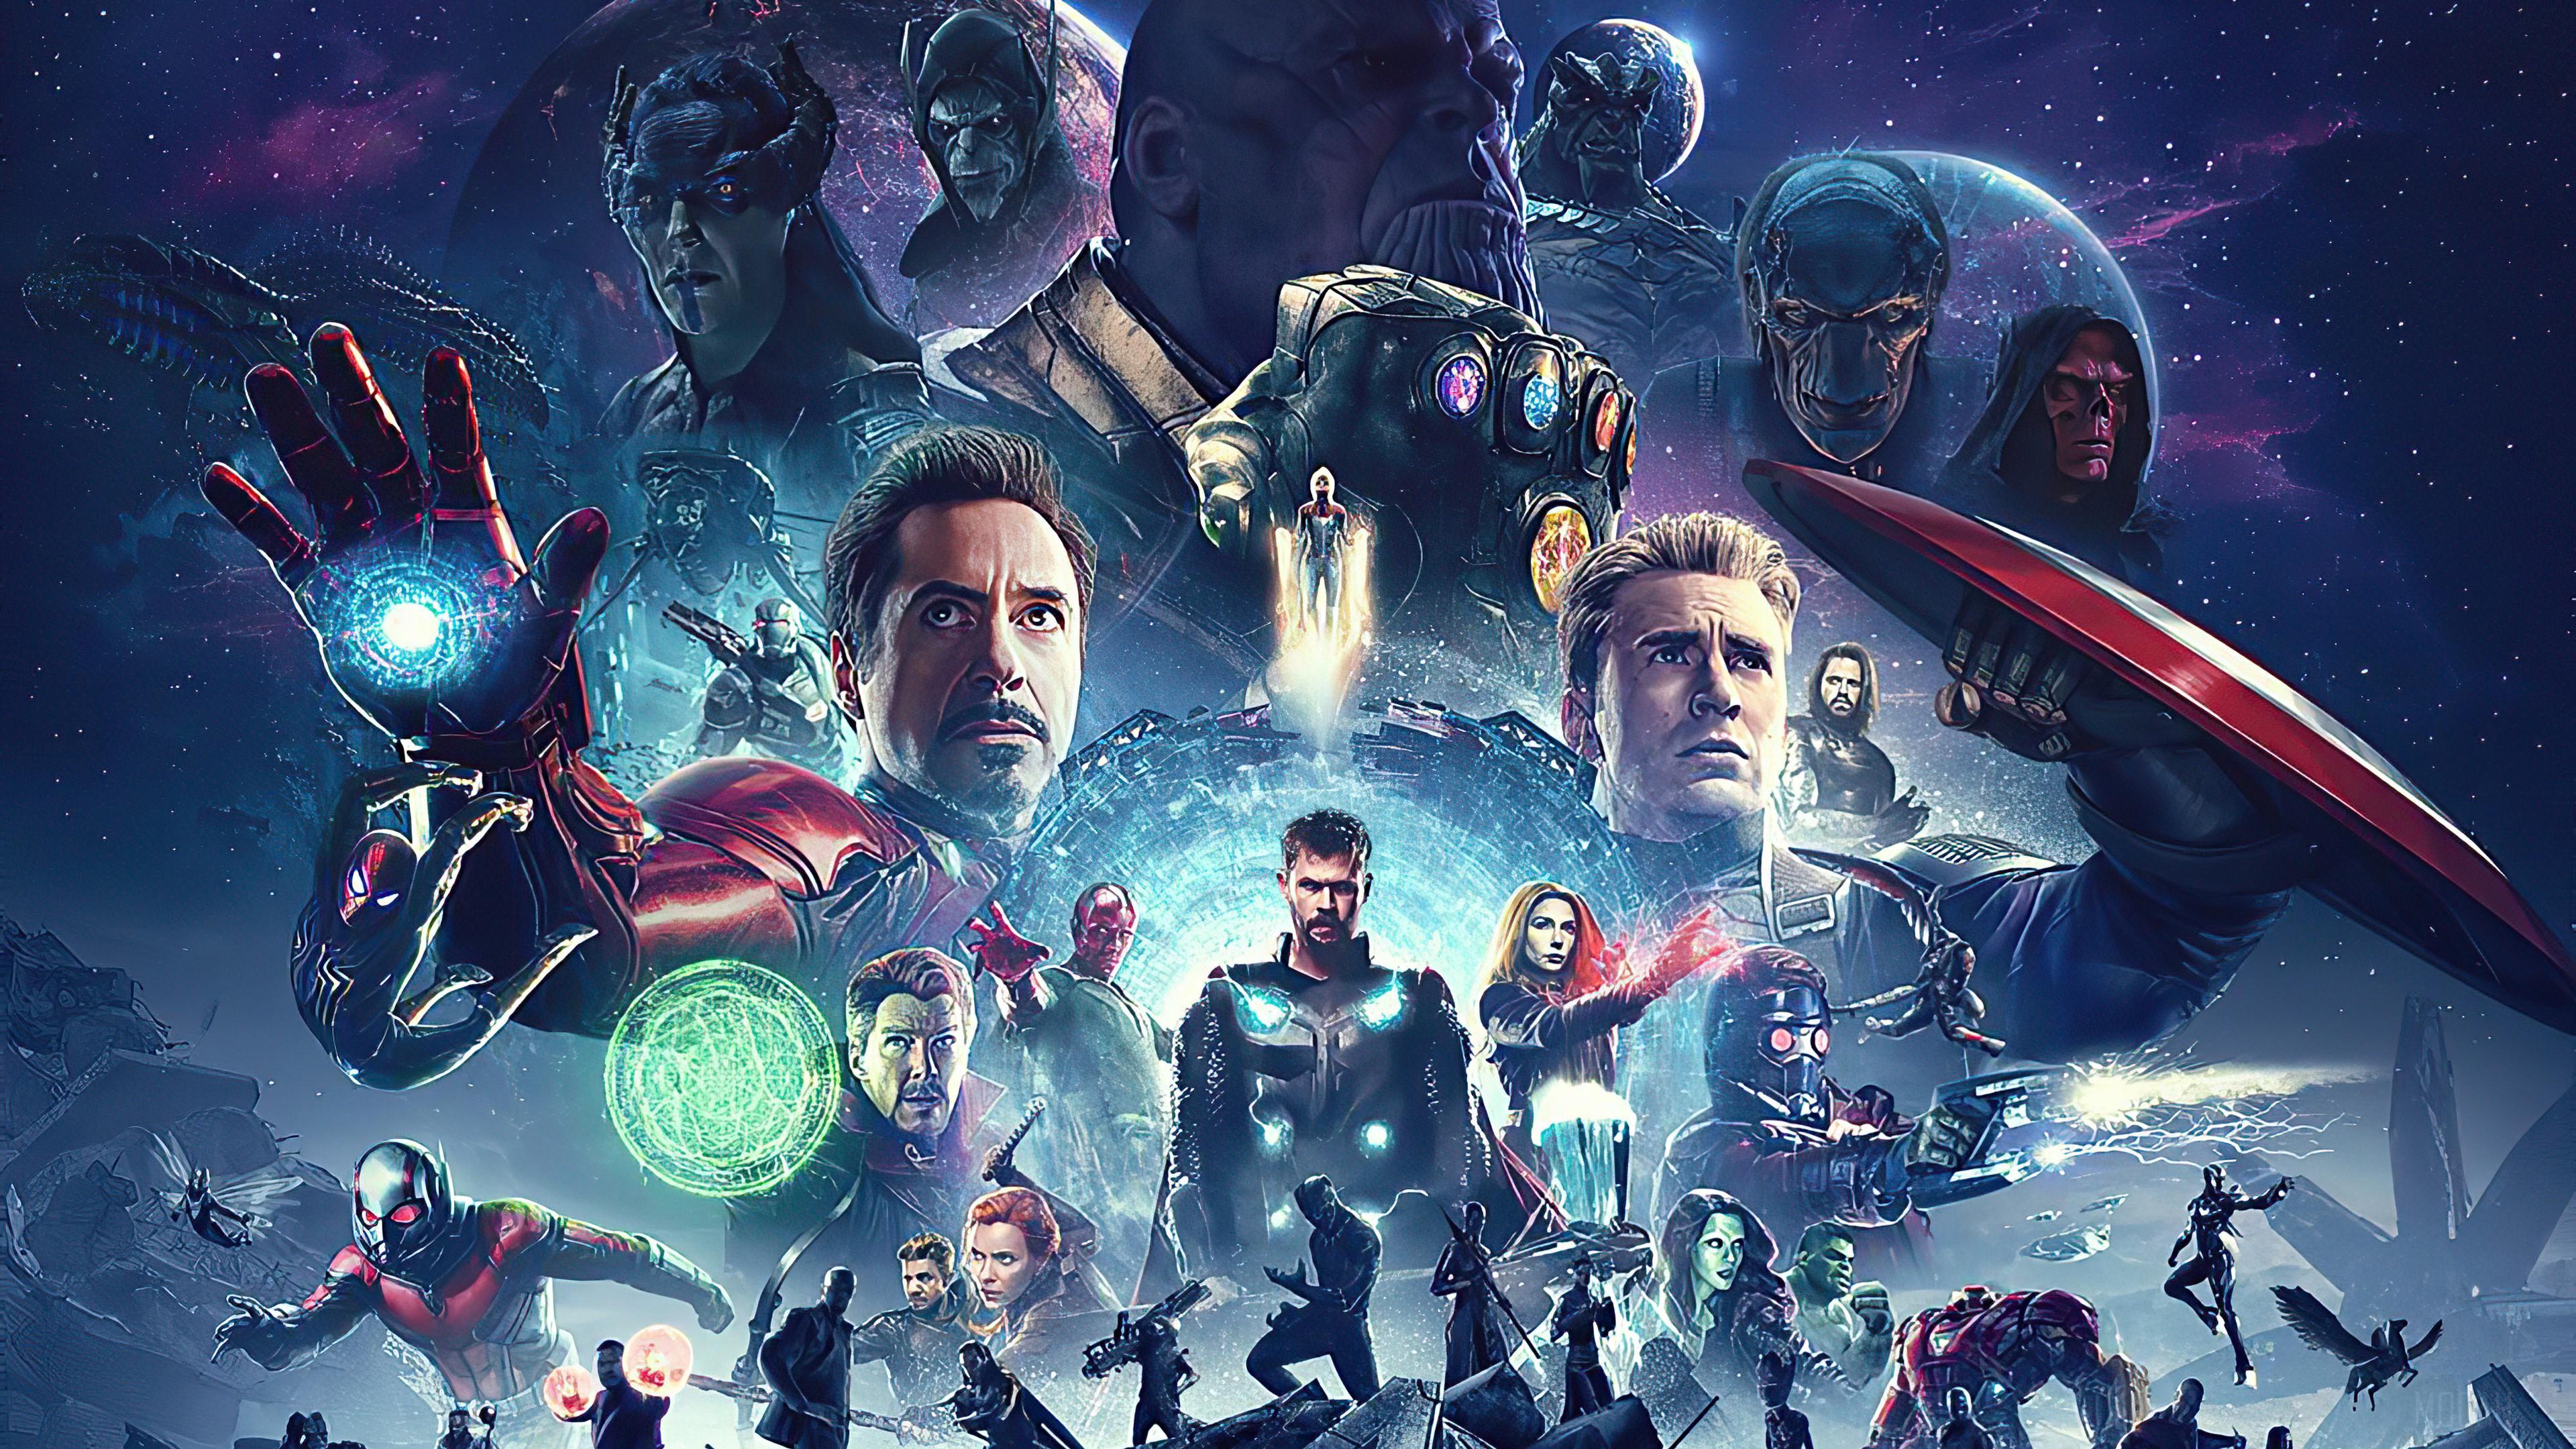 HD wallpaper, 2020 Avengers Endgame 4K